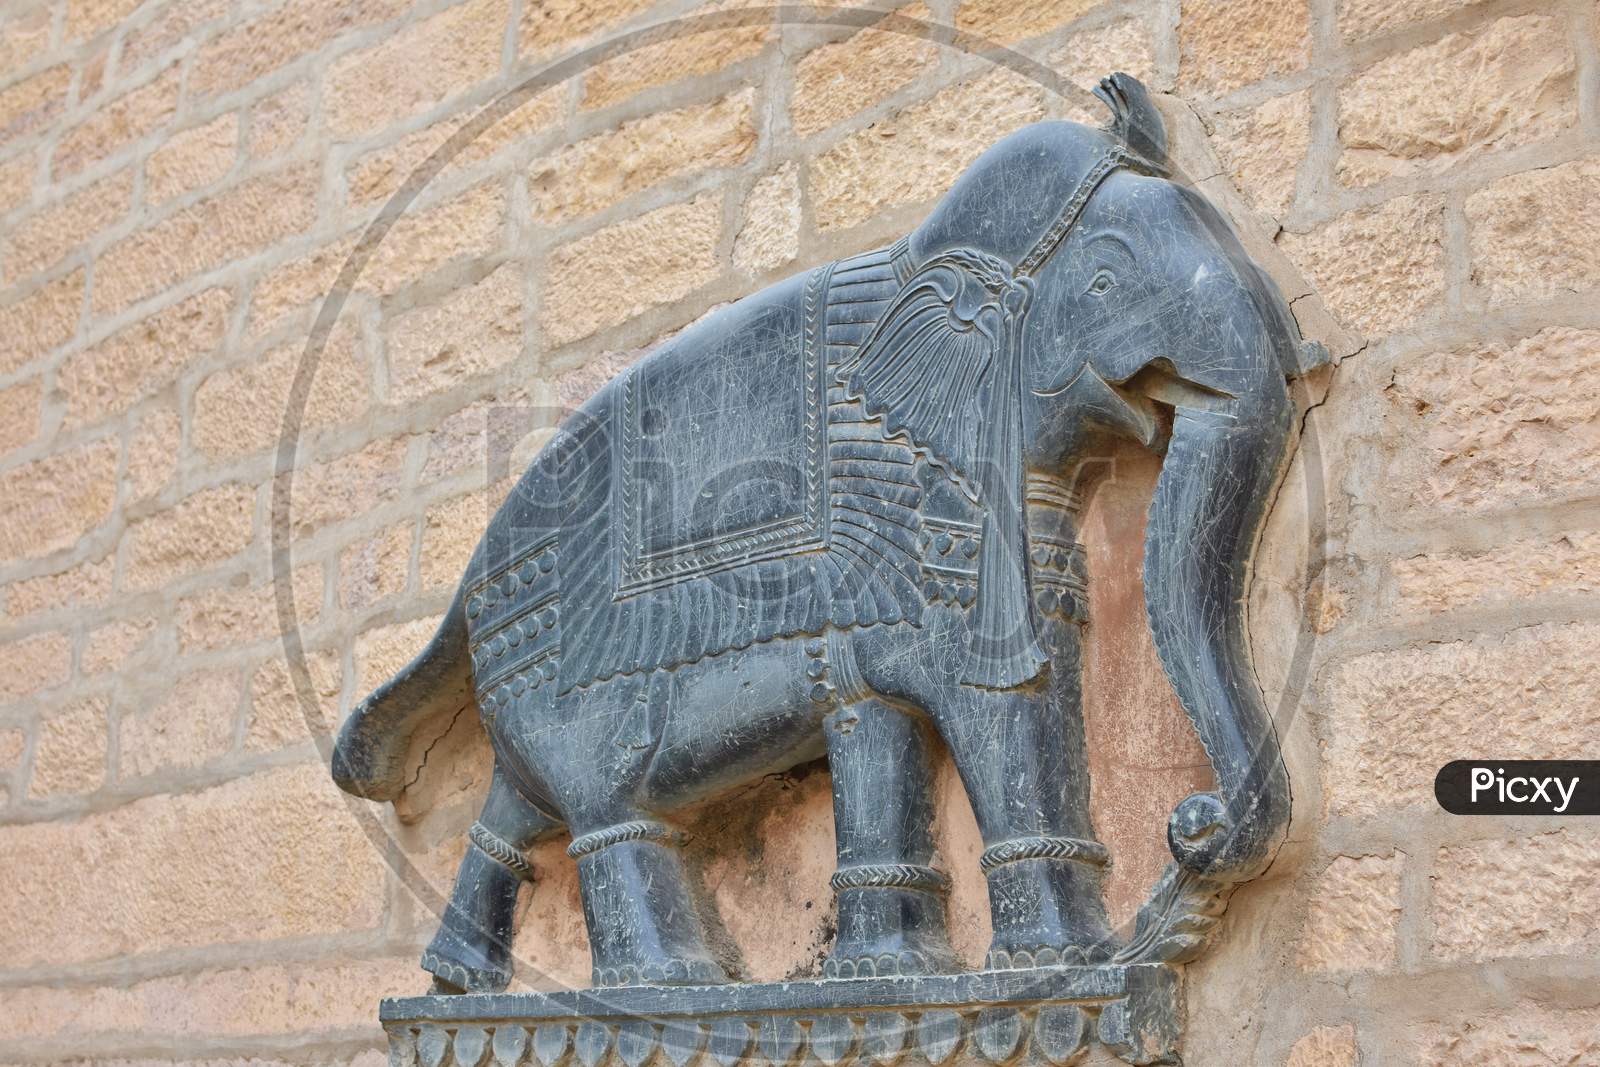 Black Stone Made Elephant On A Wall